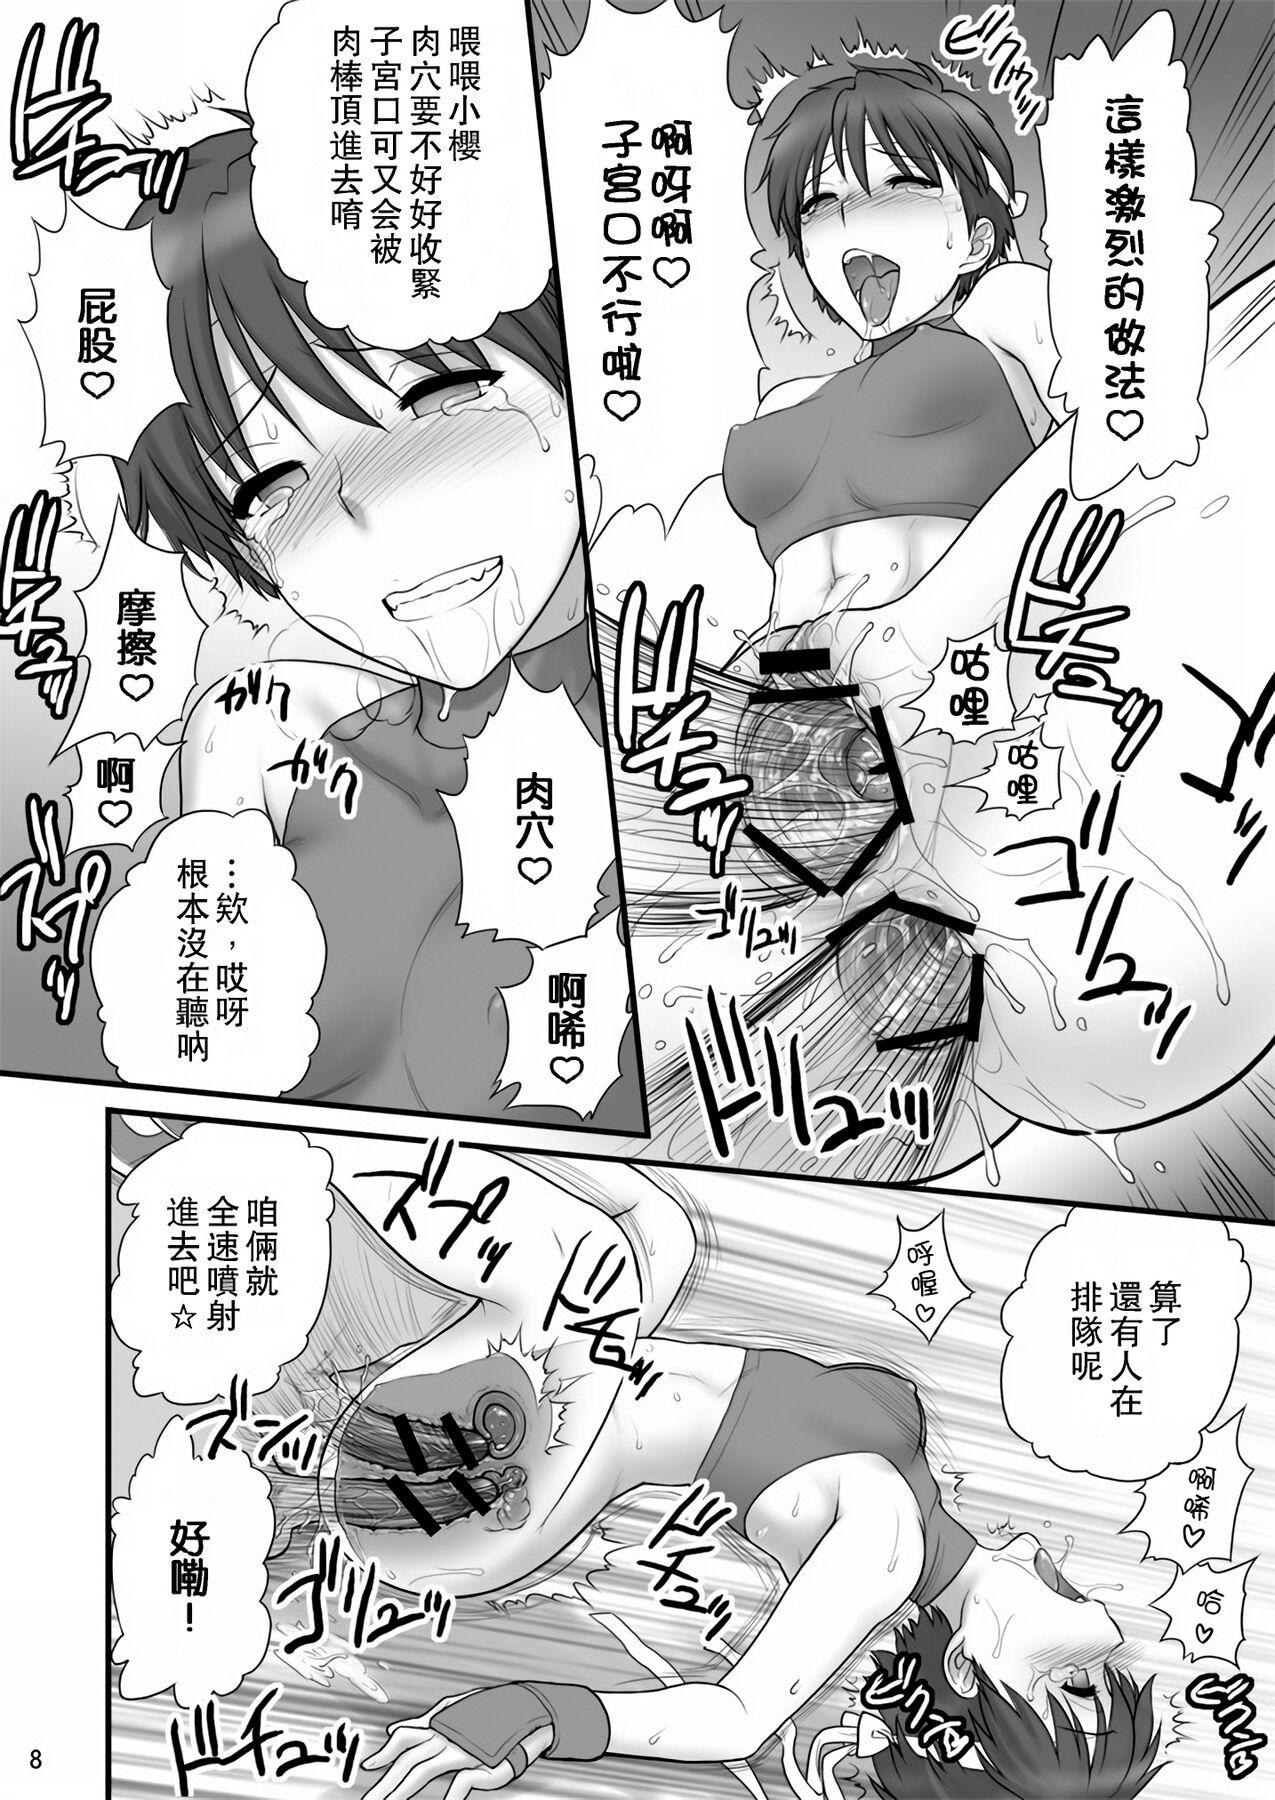 Bangbros Sakura iro | 櫻之色 - Street fighter Riding - Page 8